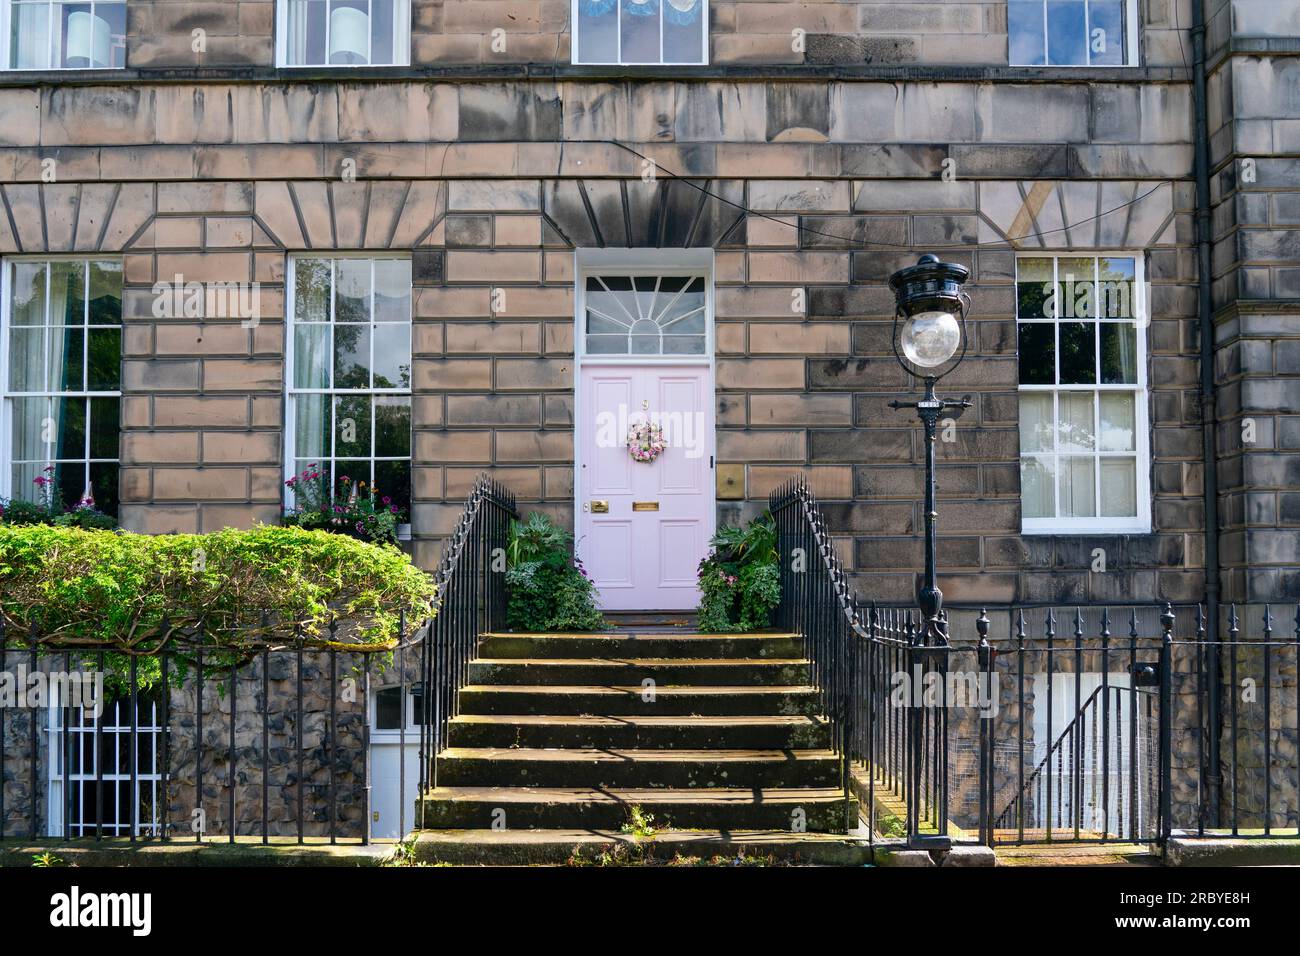 Edimburgo, Scozia, Regno Unito, 11 luglio 2023. La famosa "porta rosa" nella New Town di Edimburgo è stata ridipinta "di bianco" secondo la proprietaria Miranda Dickson. La casa è all'interno di un sito patrimonio dell'umanità dell'UNESCO e il Consiglio comunale di Edimburgo, a seguito di una denuncia, ha minacciato la signora Dickson di una multa grande se non ha ridipinto la porta in un colore più conservativo. La porta riverniciata è stata ora nuovamente ritenuta inopportuna con una nuova denuncia presentata al Consiglio. Iain Masterton/Alamy Live News Foto Stock